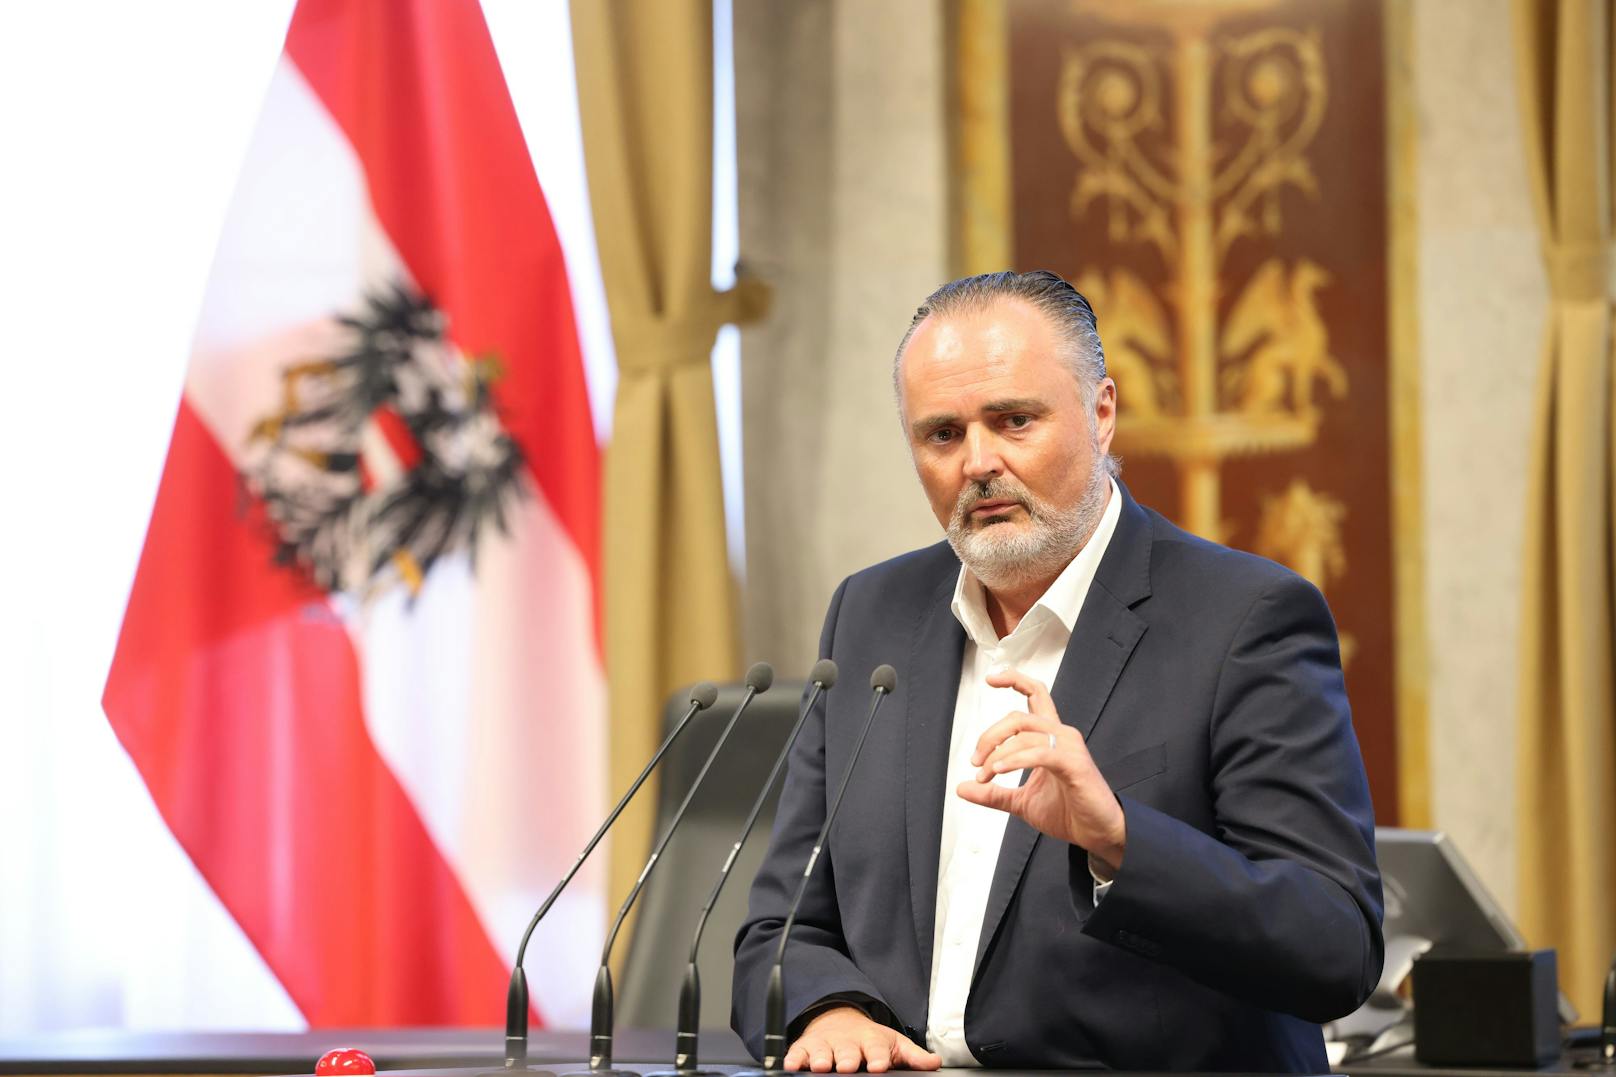 Hans Peter Doskozil gewann die Mitgliederbefragung der SPÖ knapp. In Oberösterreich, wo am 3. Juni der Parteitag steigt, fordert man nun, dass dieses Ergebnis akzeptiert wird.